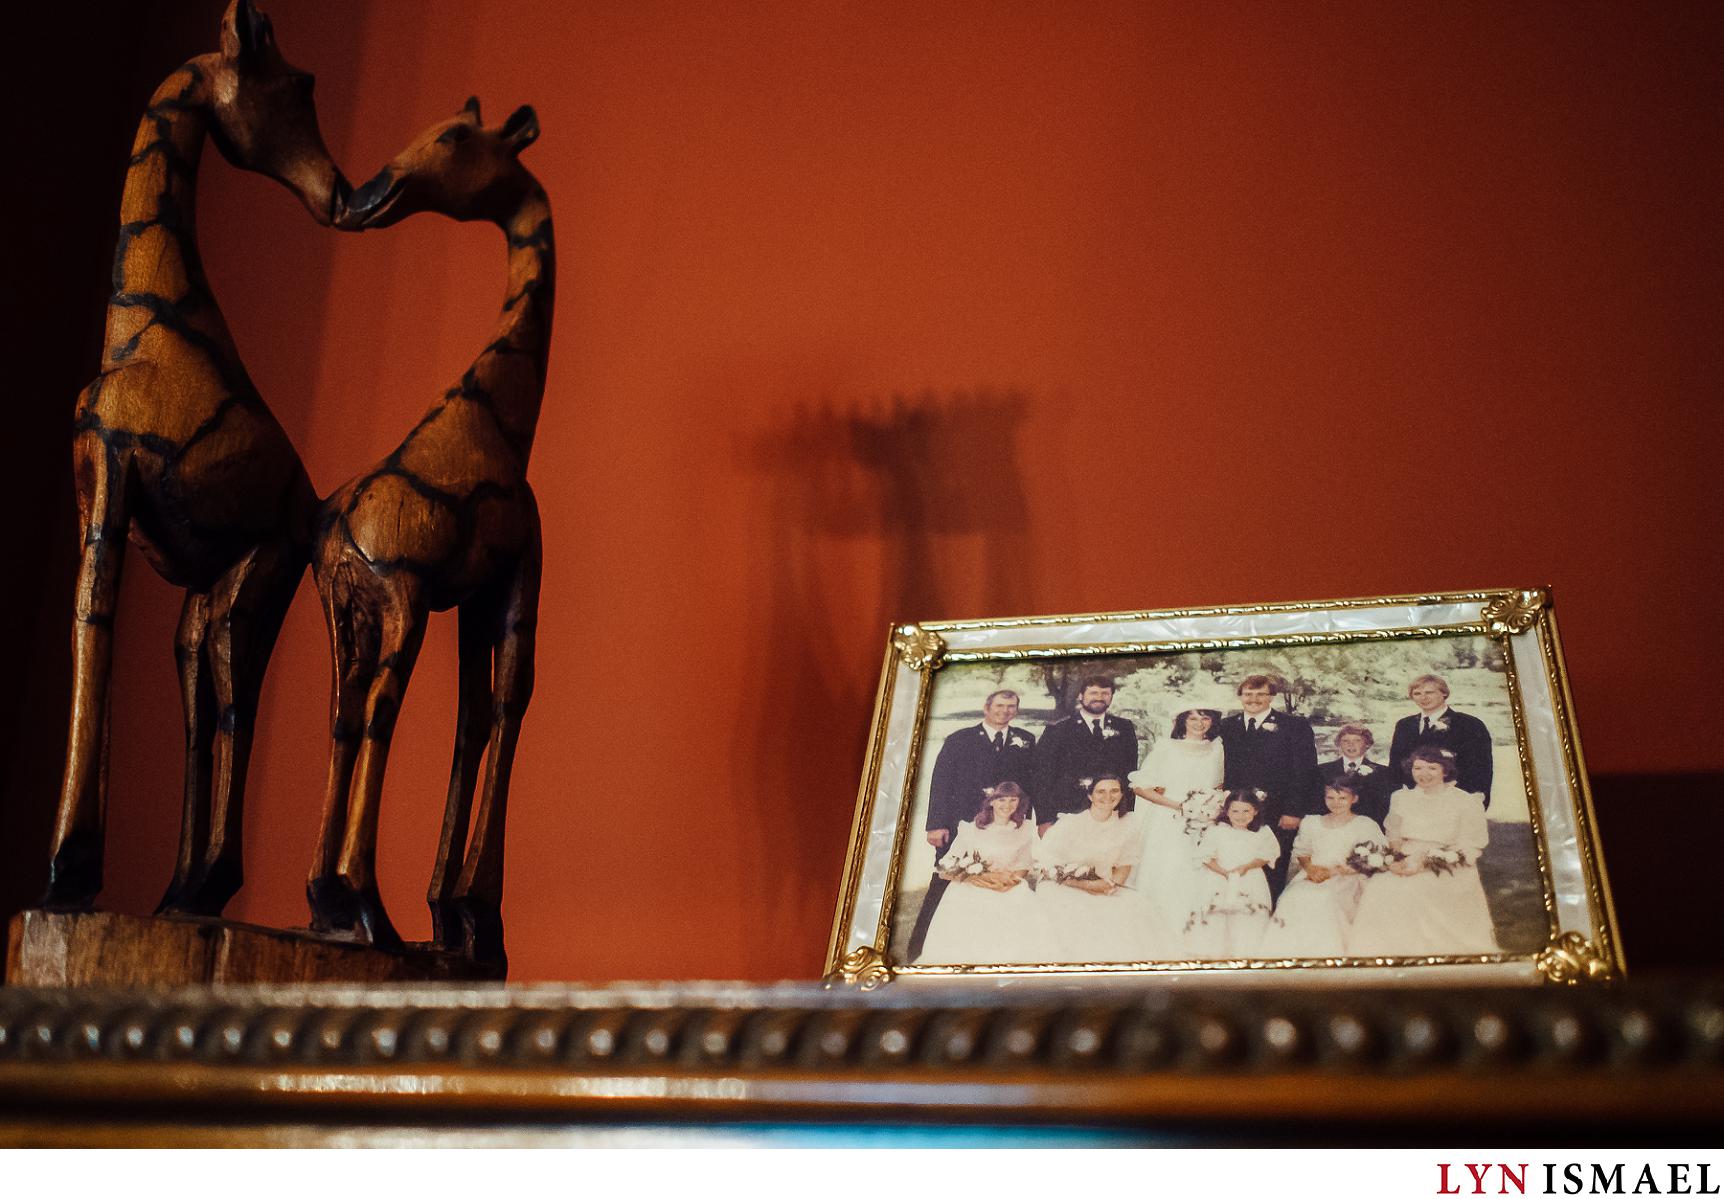 Bride's parent's wedding photo and a giraffe sculpture